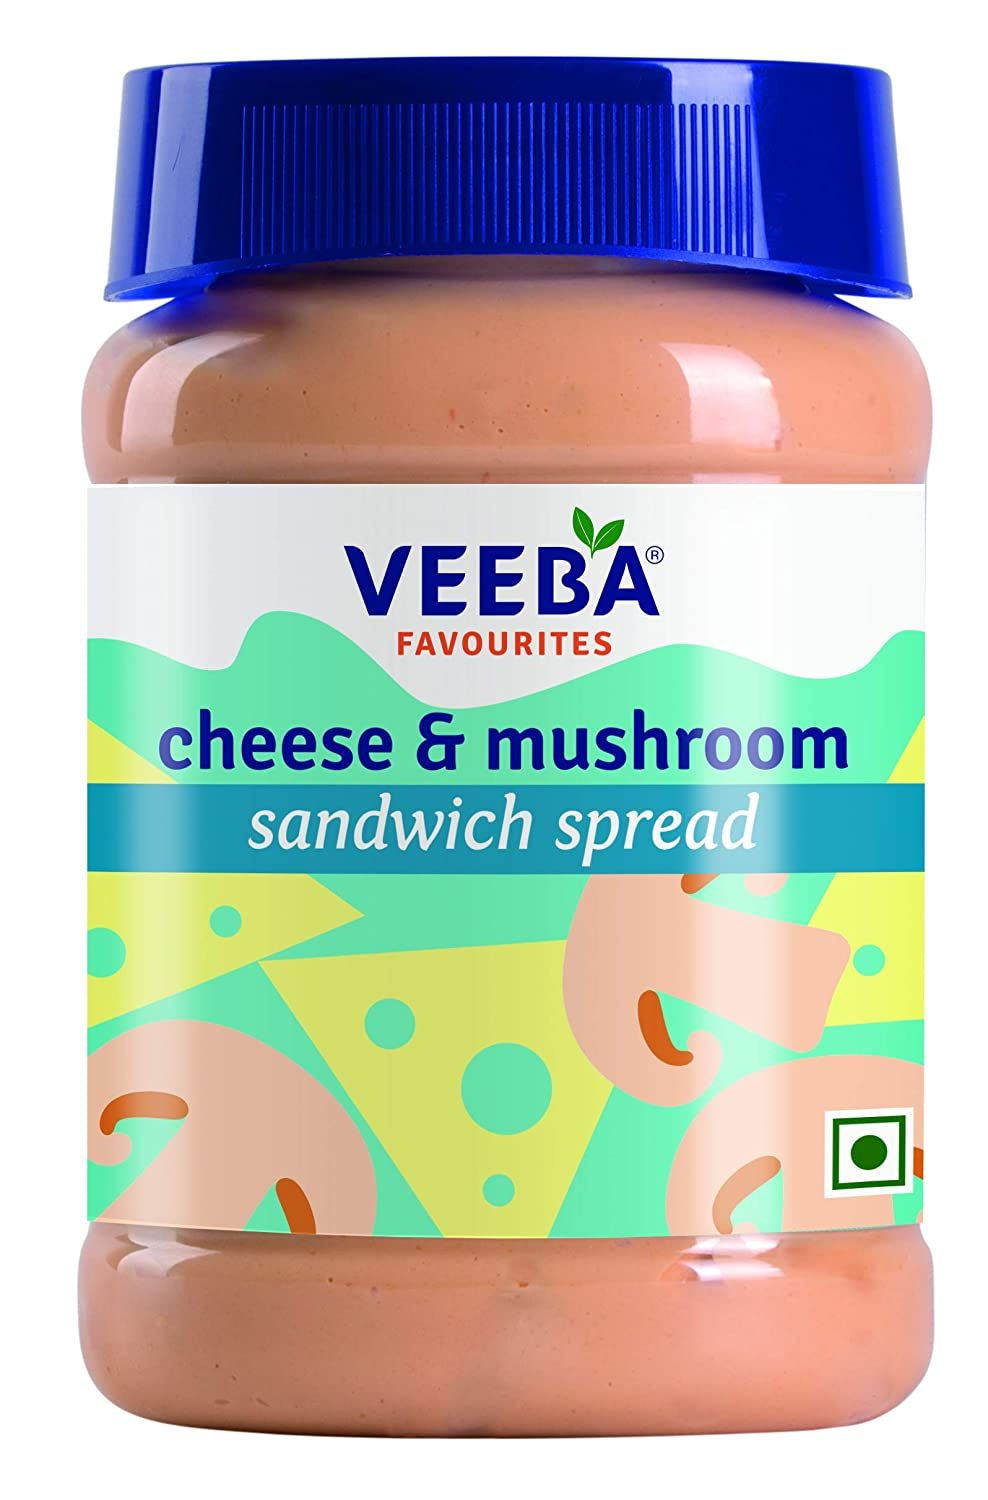 Veeba Cheese and Mushroom Sandwich Spread Image